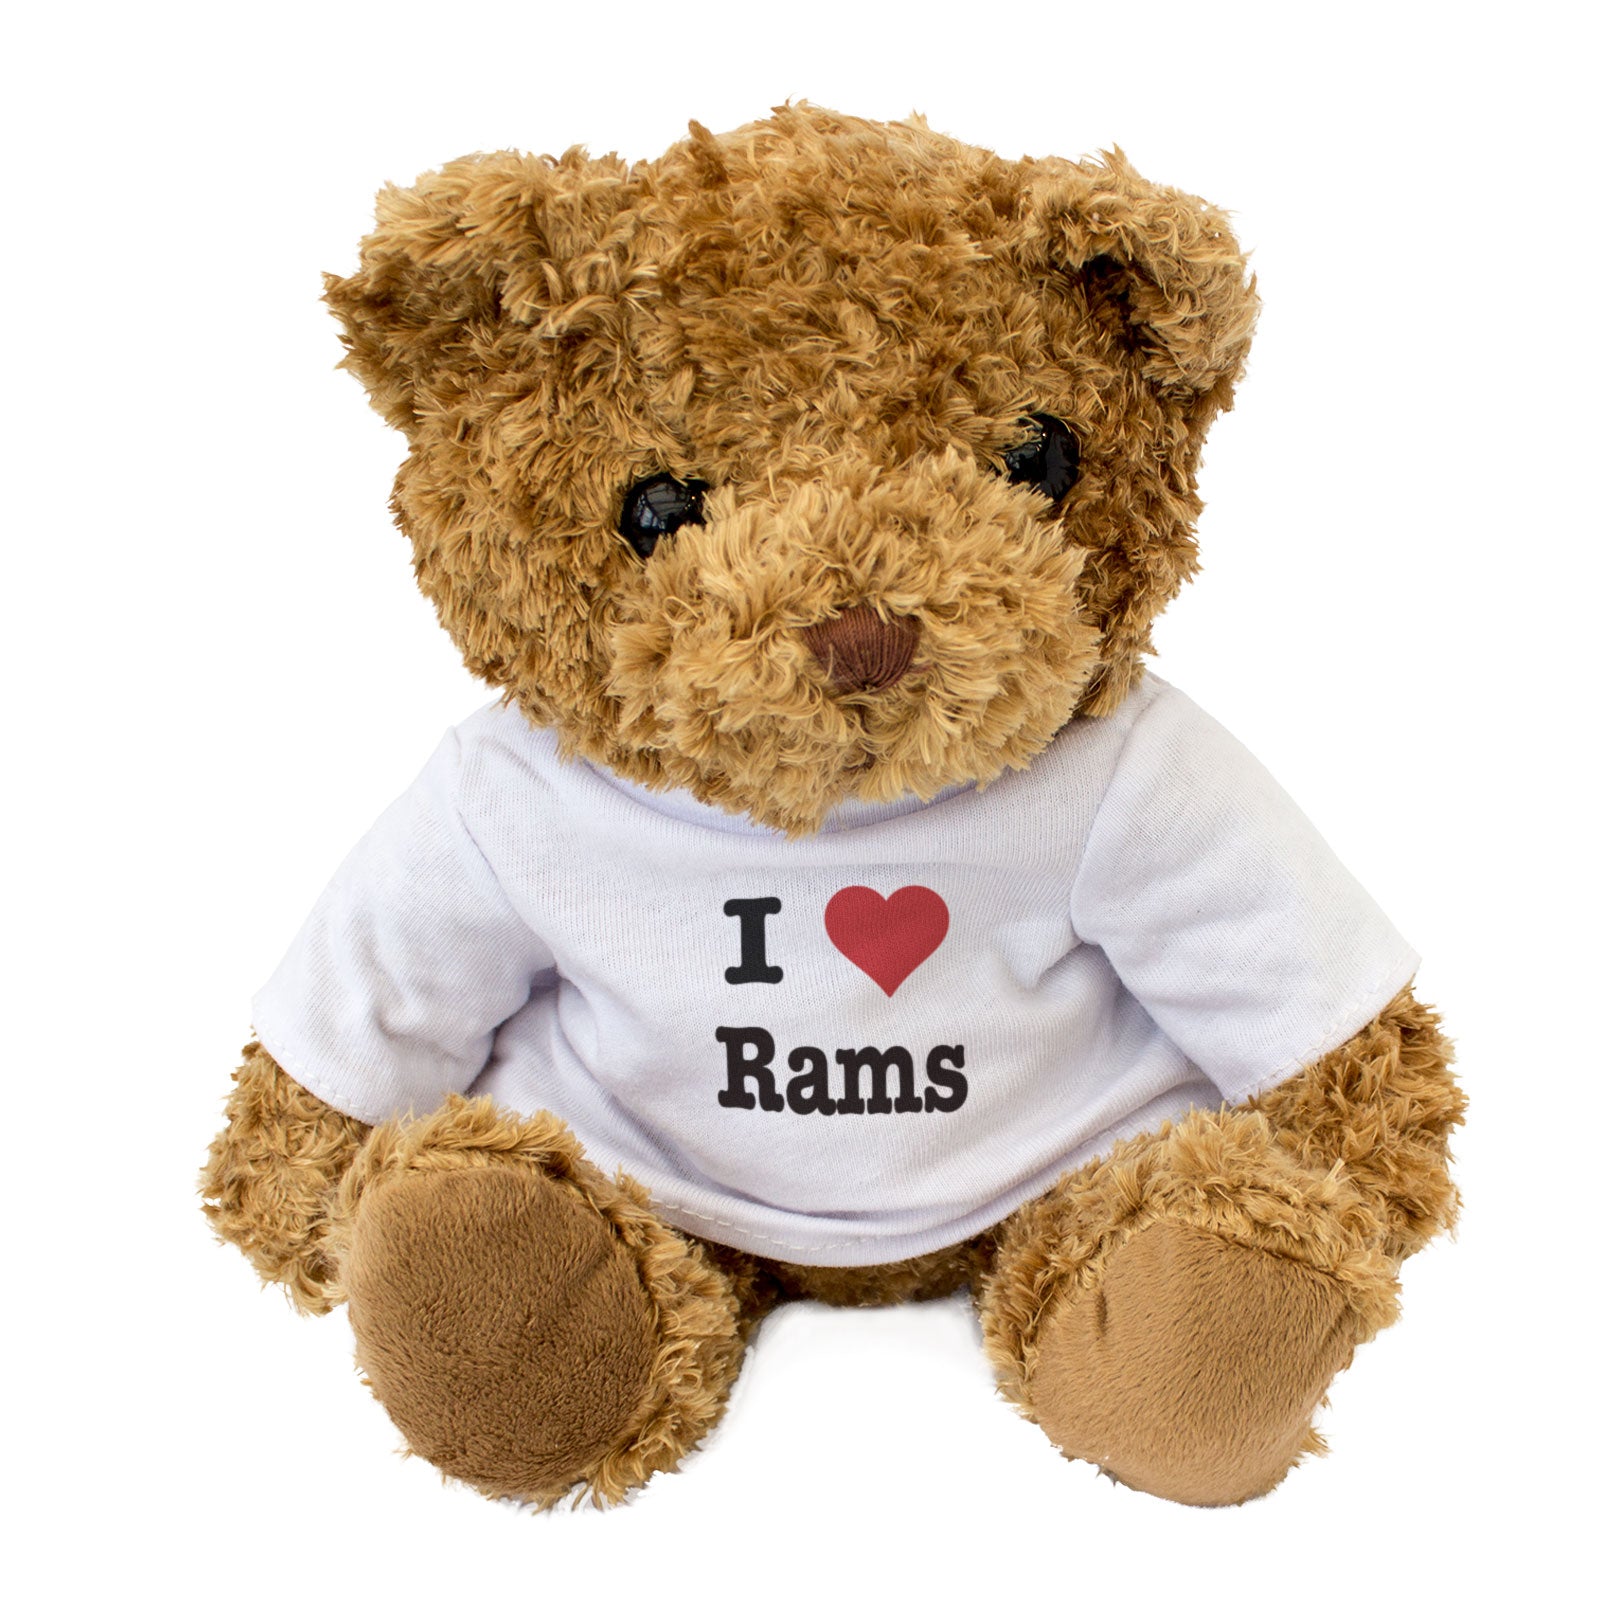 I Love Rams - Teddy Bear